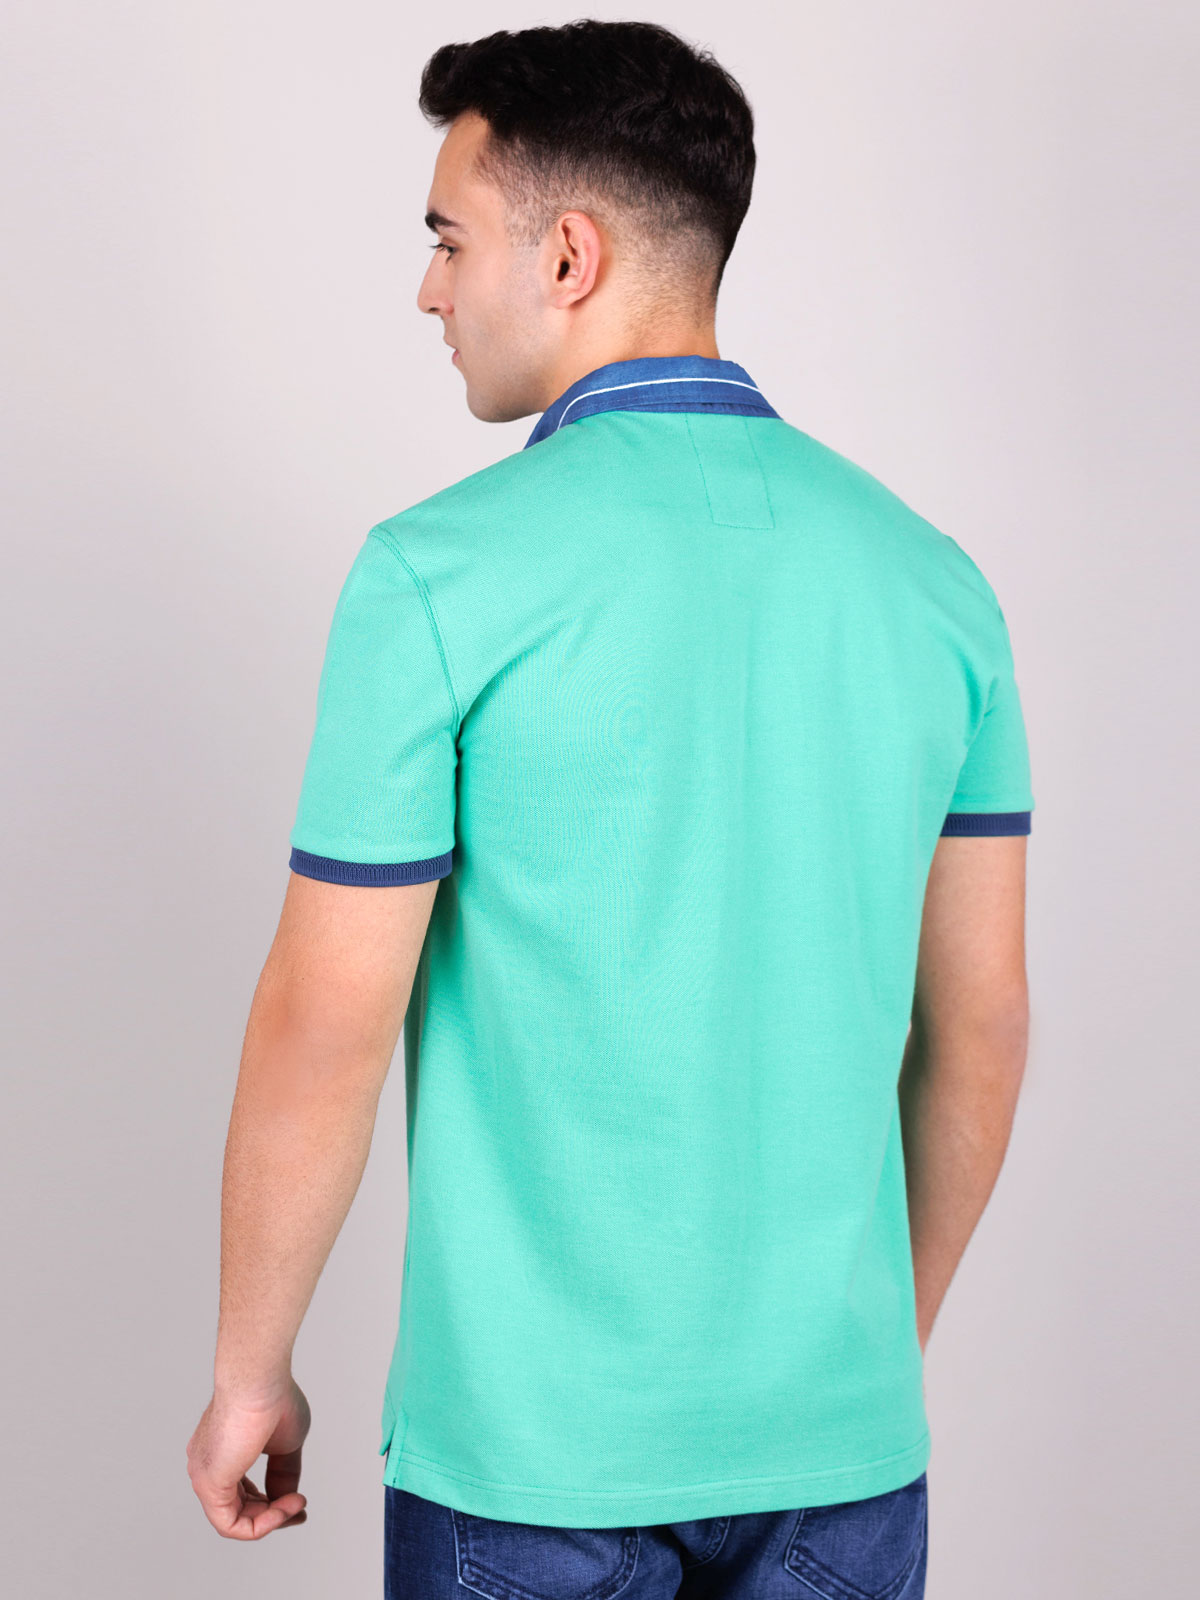 Μπλουζάκι σε πράσινο χρώμα με τζιν γιακά - 93414 € 30.93 img4